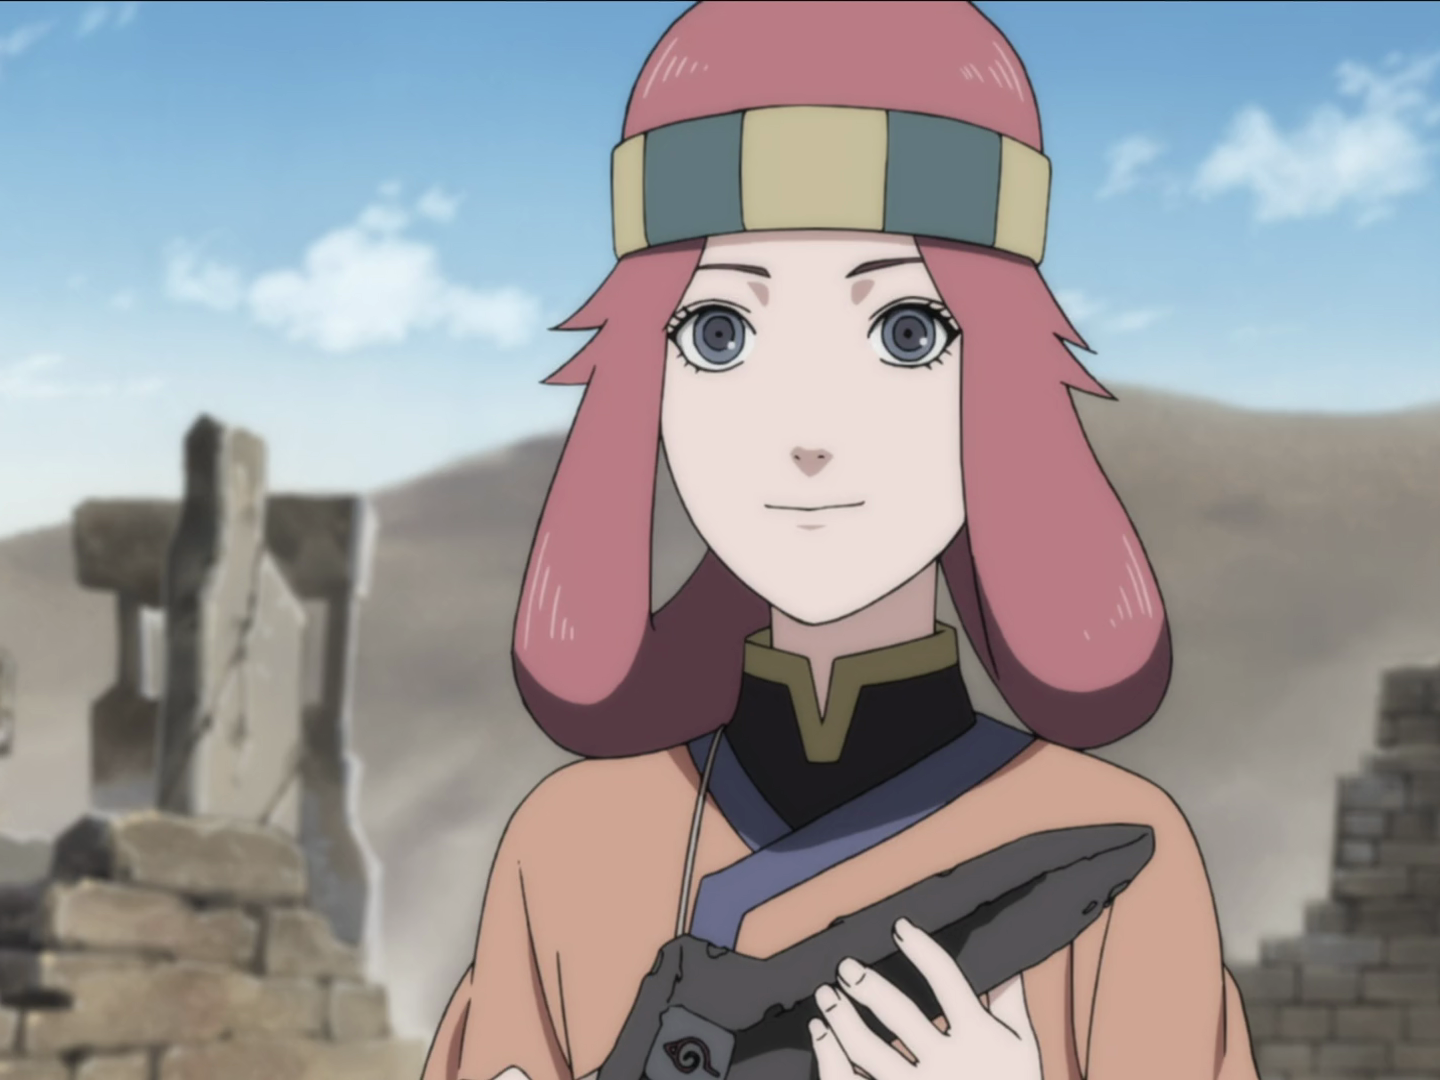 Sara S - Naruto Fanart!